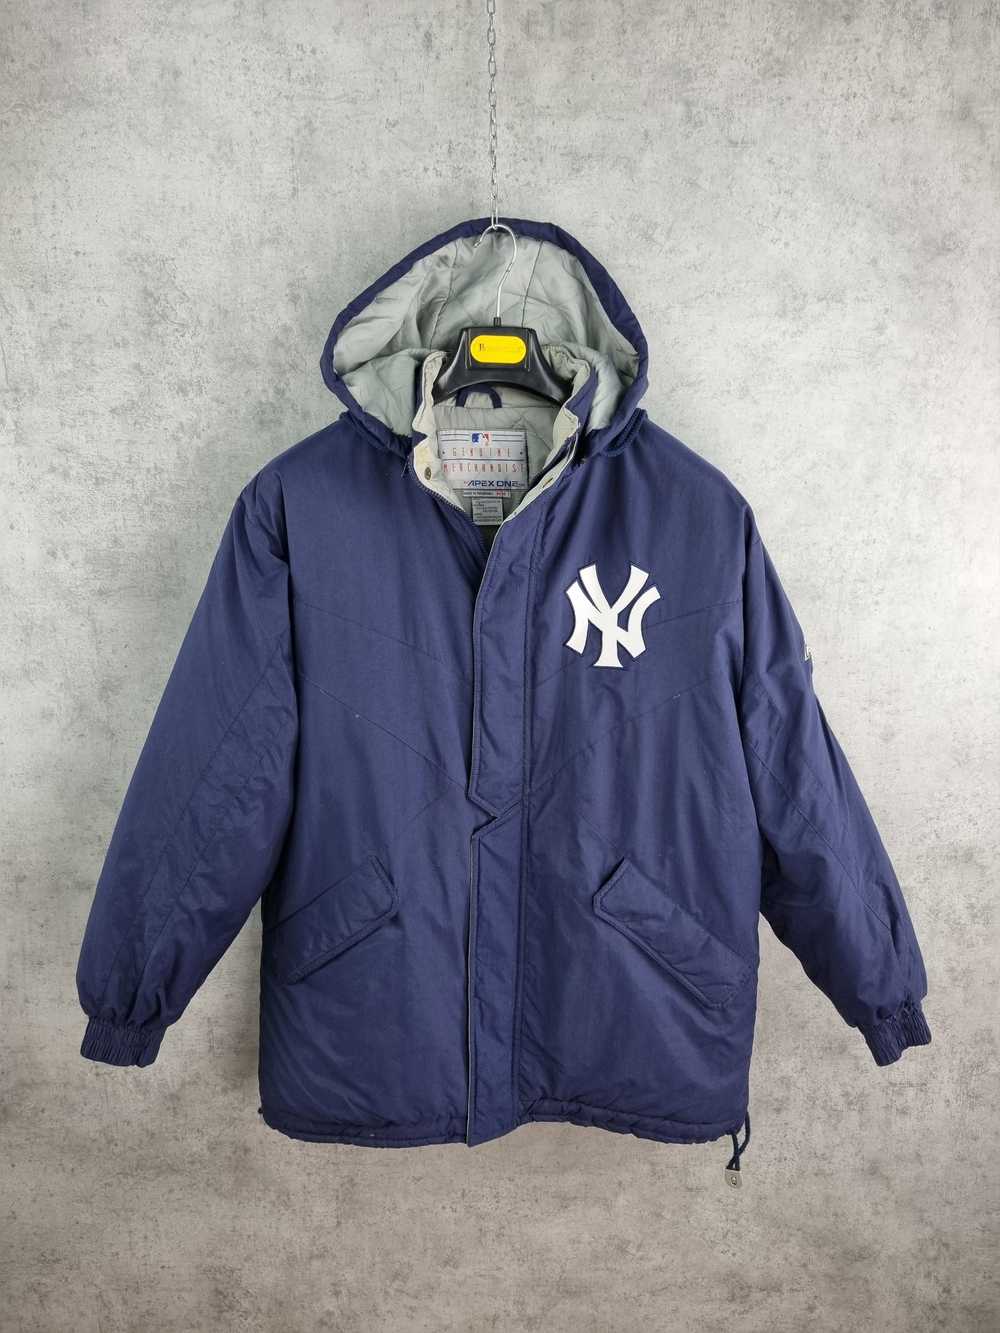 MLB × New York × New York Yankees Rare 90s New Yo… - image 3